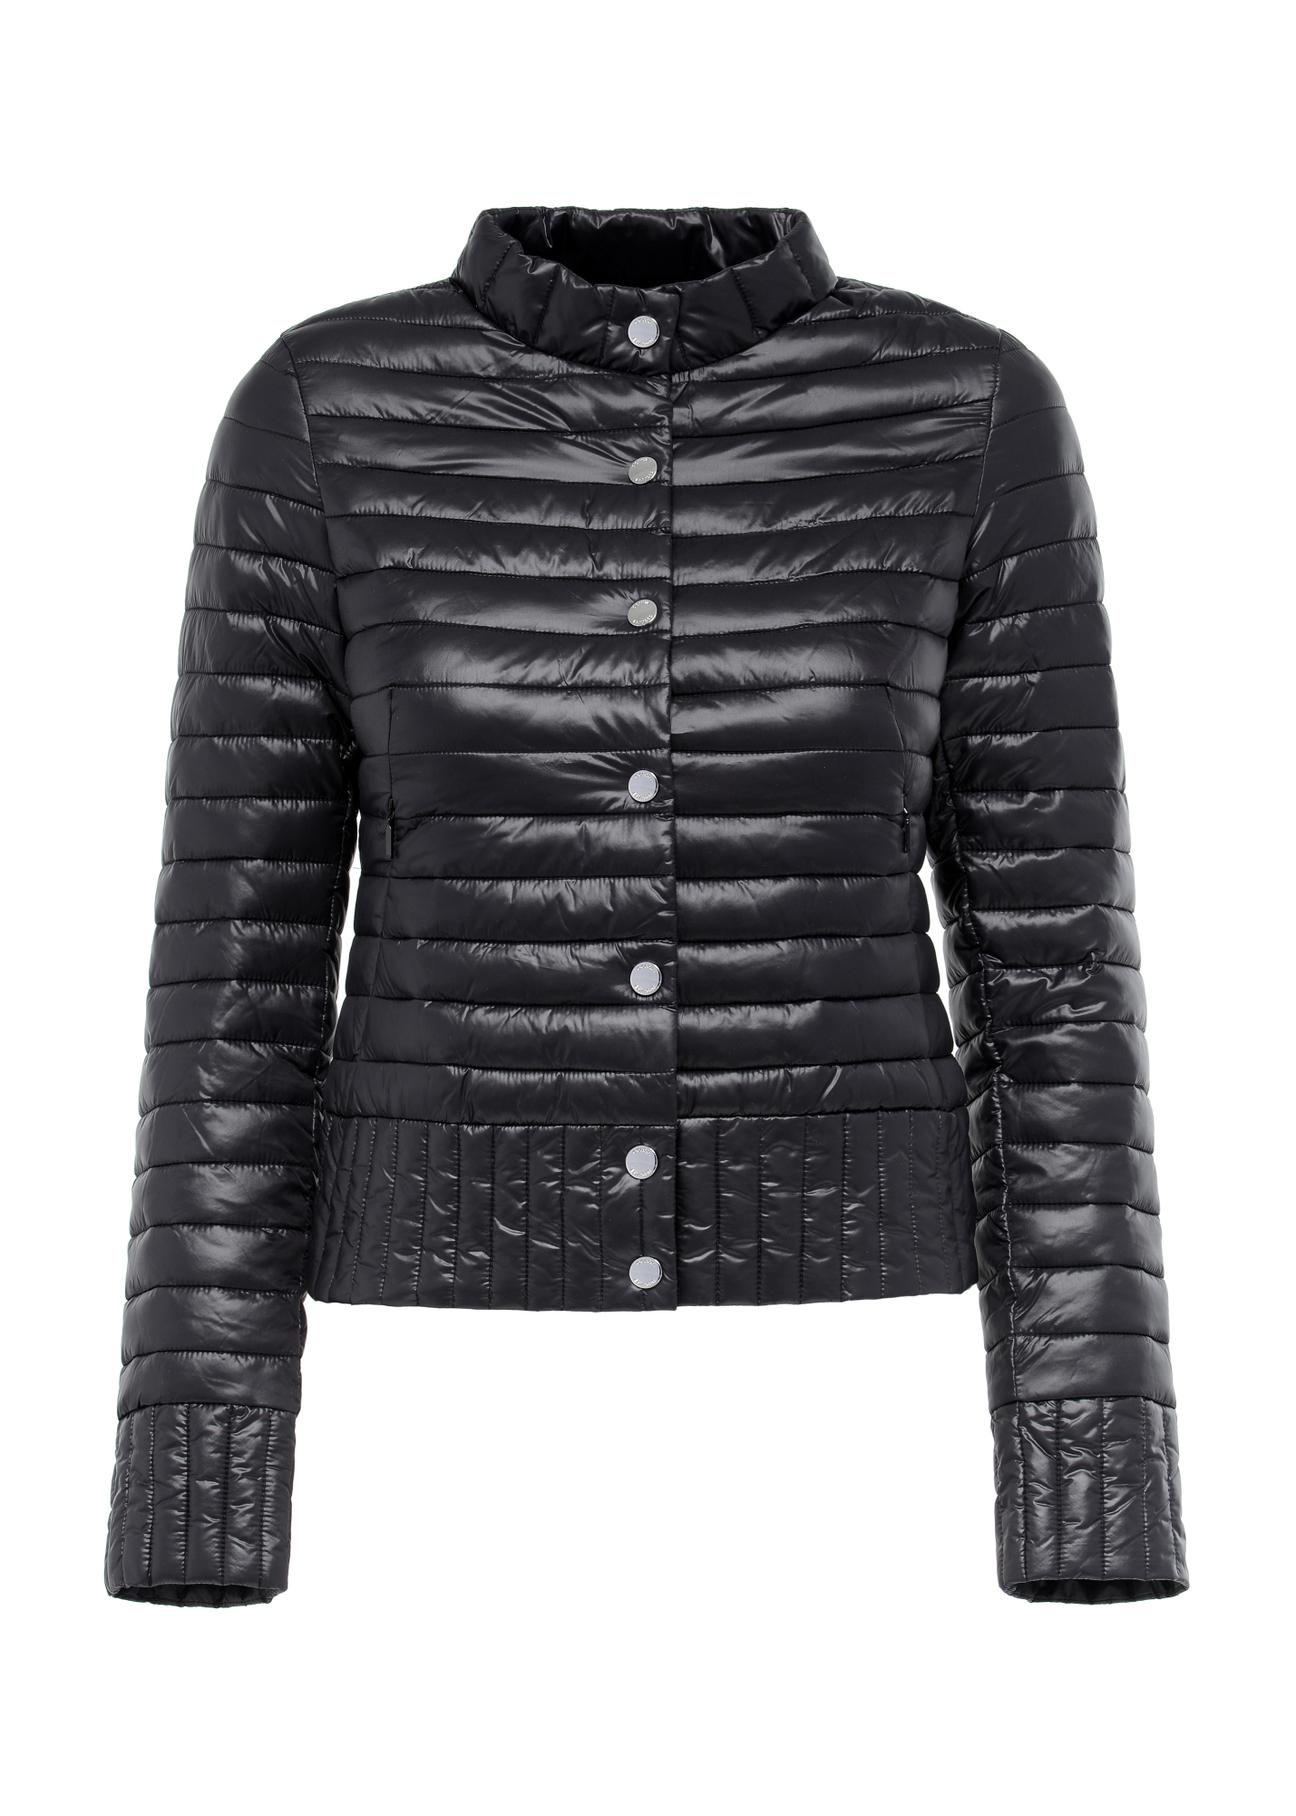 Czarna pikowana kurtka damska ze stójką KURDT-0441-99(W23)